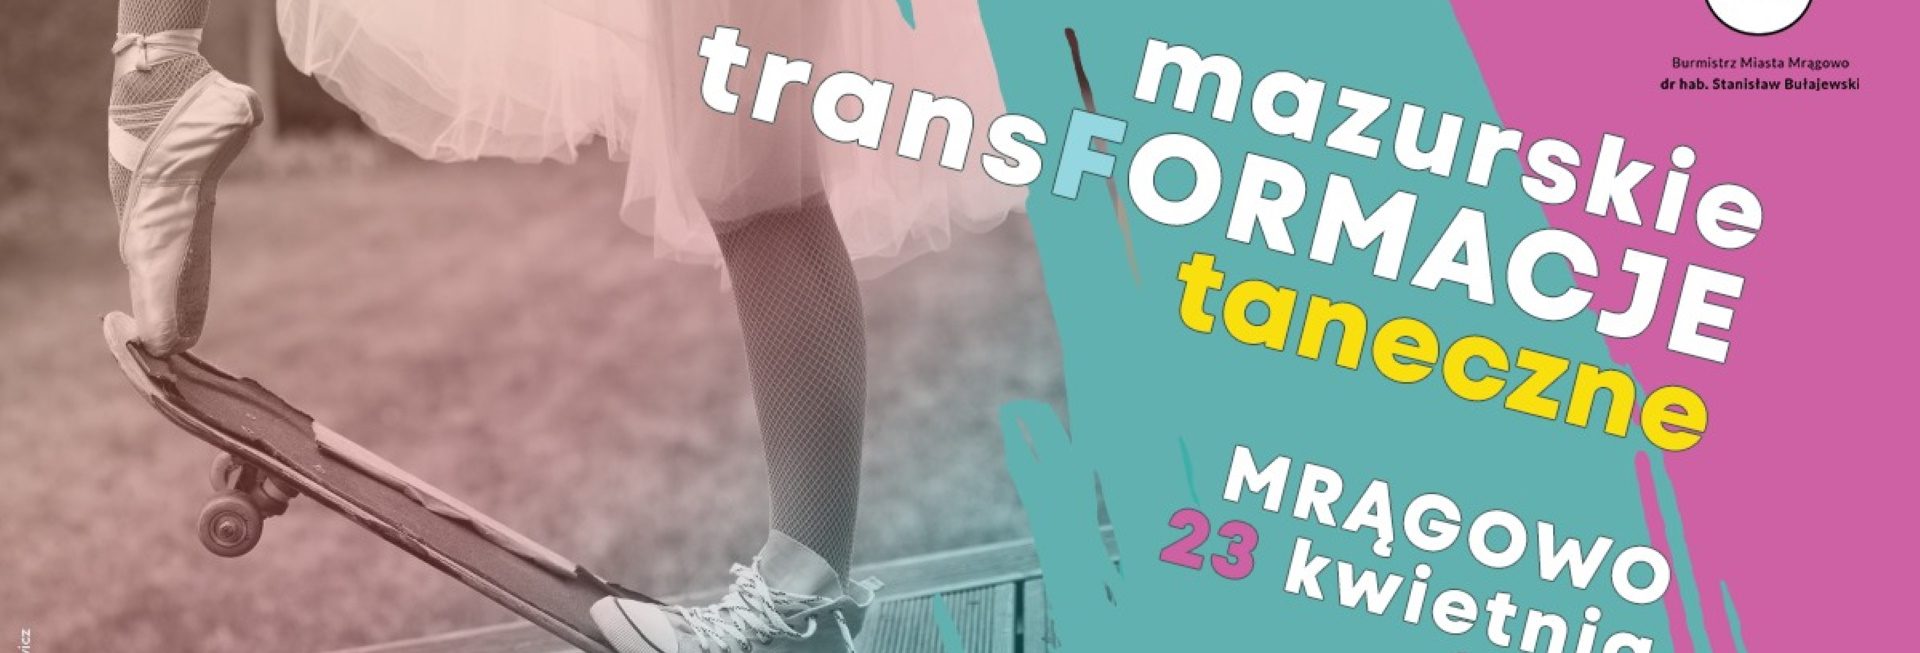 Plakat graficzny zapraszający do Mrągowa na 4. edycję Mazurskich TransFormacji Tanecznych Mrągowo 2022.